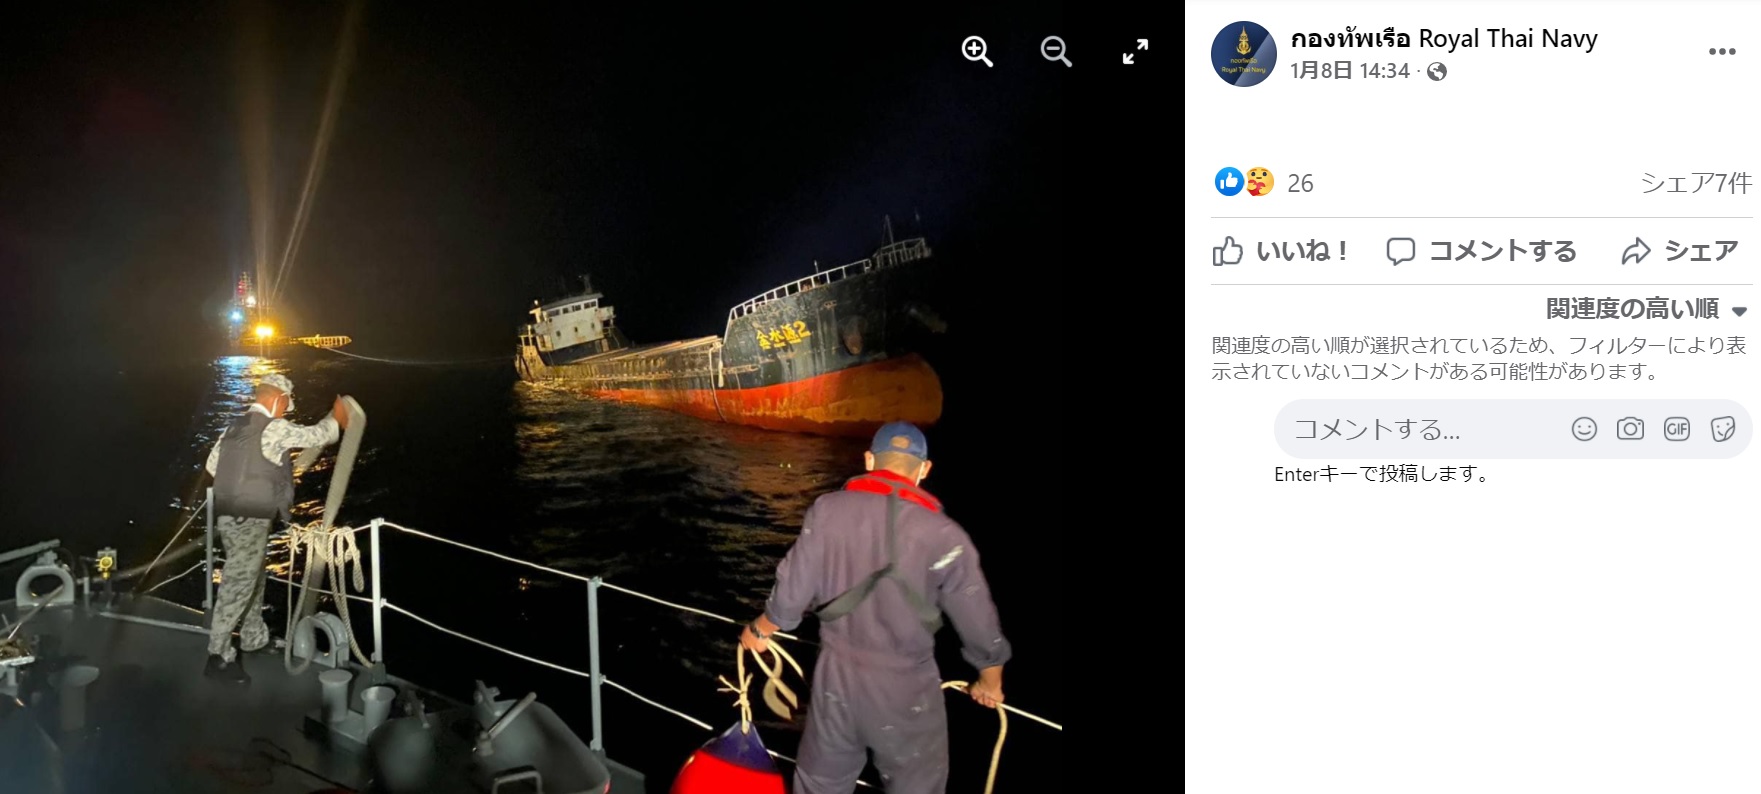 暗い海に浮かび上がる姿は“幽霊船”そのもの（画像は『กองทัพเรือ Royal Thai Navy　2022年1月8日付Facebook「ทัพเรือภาคที่ 2 ออกช่วยเหลือเรือสินค้าใกล้จม ตรวจสอบ」』のスクリーンショット）